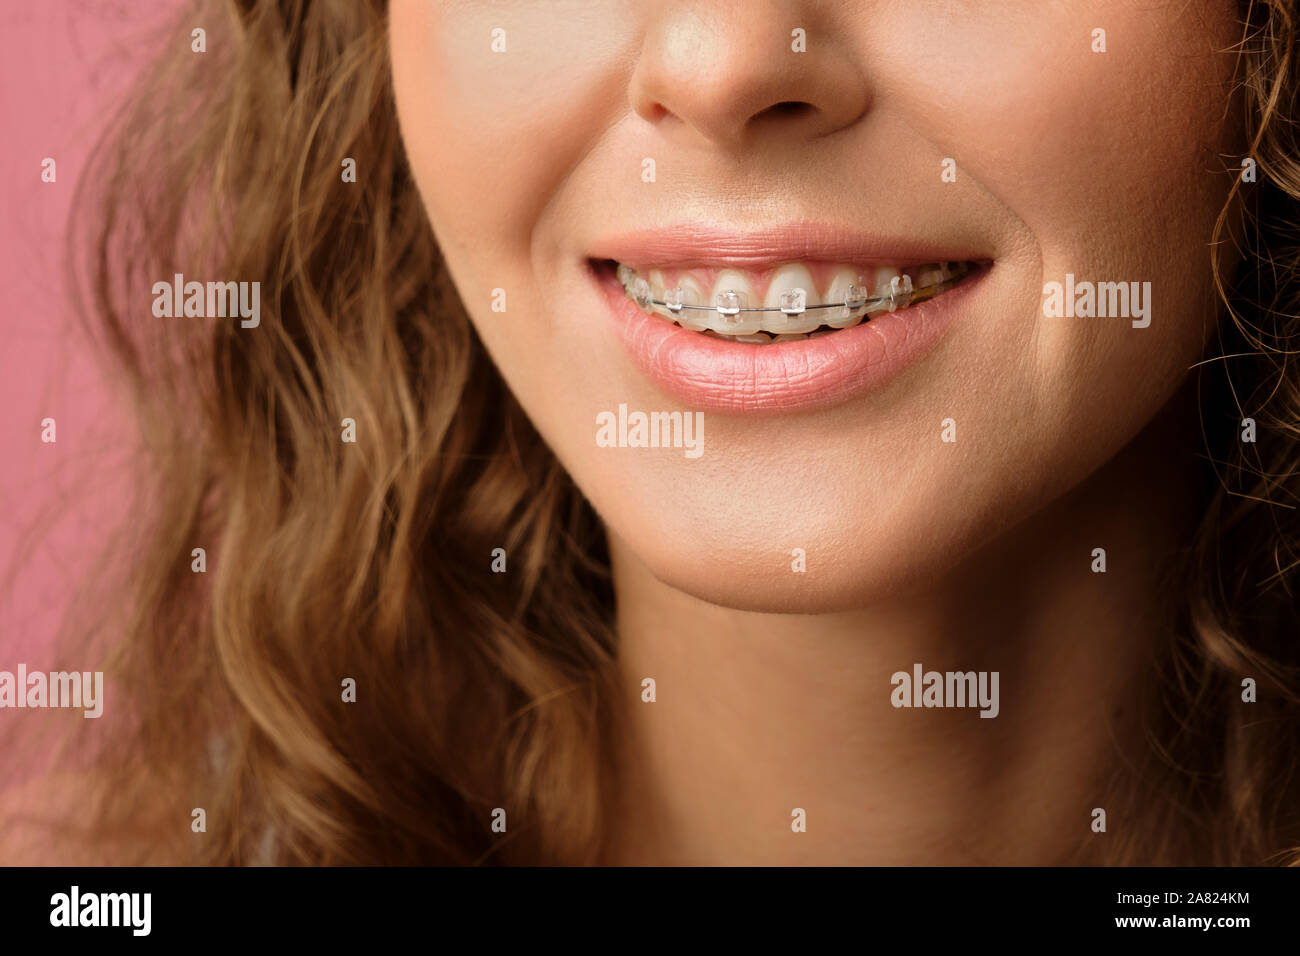 Photo de gros plan joli sourire de femme de race blanche sourire avec les cheveux bouclés portant appareil dentaire isolé sur fond rose. Banque D'Images